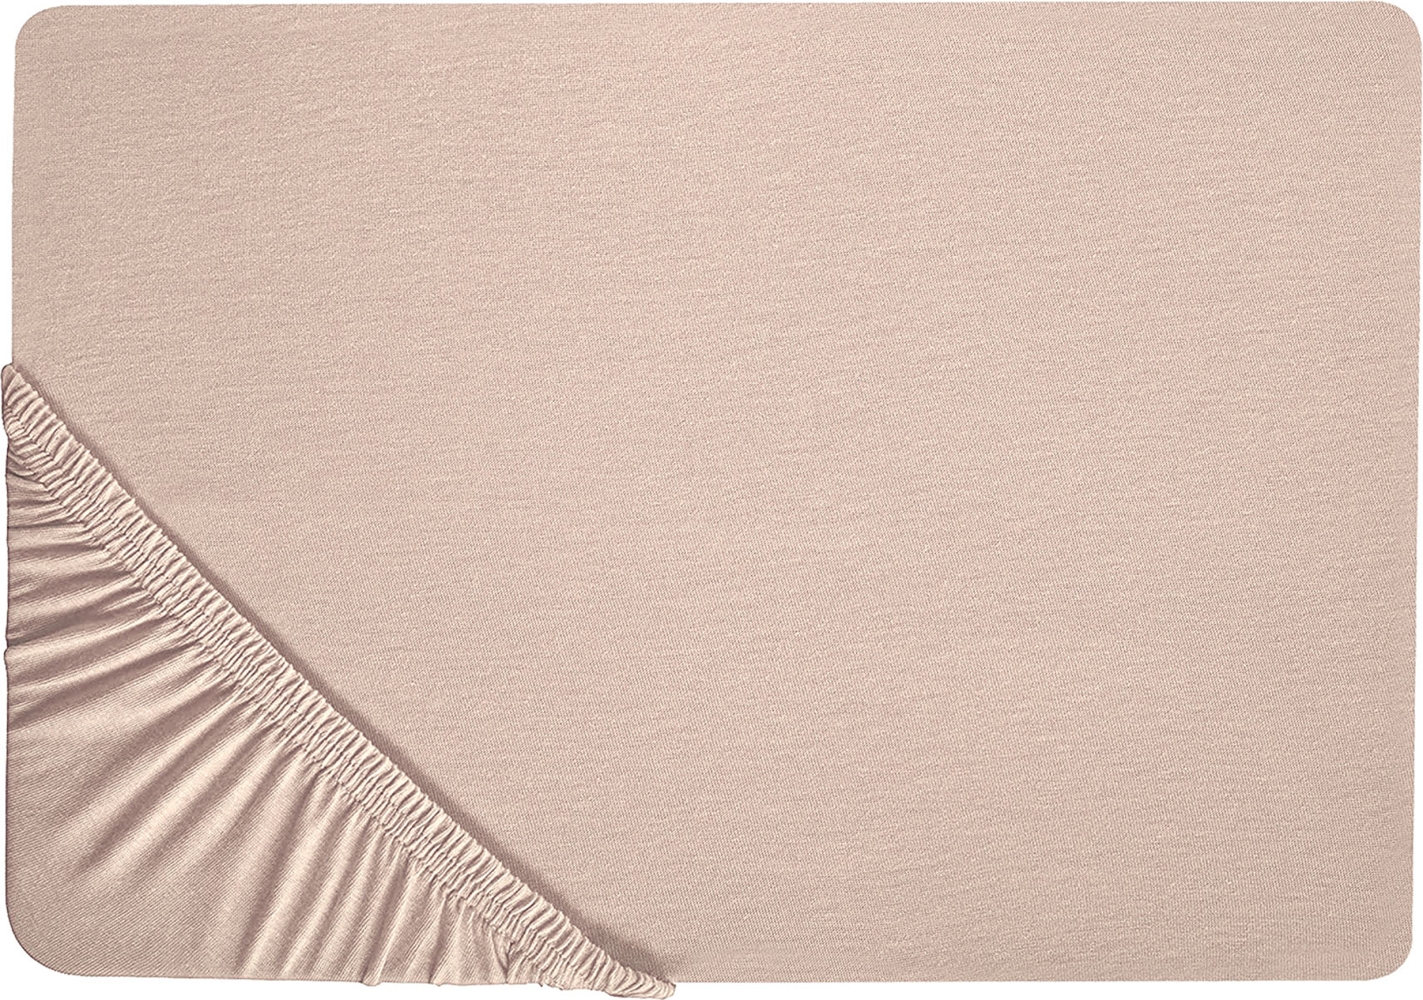 Spannbettlaken 'Hofuf' Beige Baumwolle mit Gummizug 160 x 200 cm Betttuch für Klassische Hohe Matratze Atmungsaktiv Schlafzimmer Bild 1